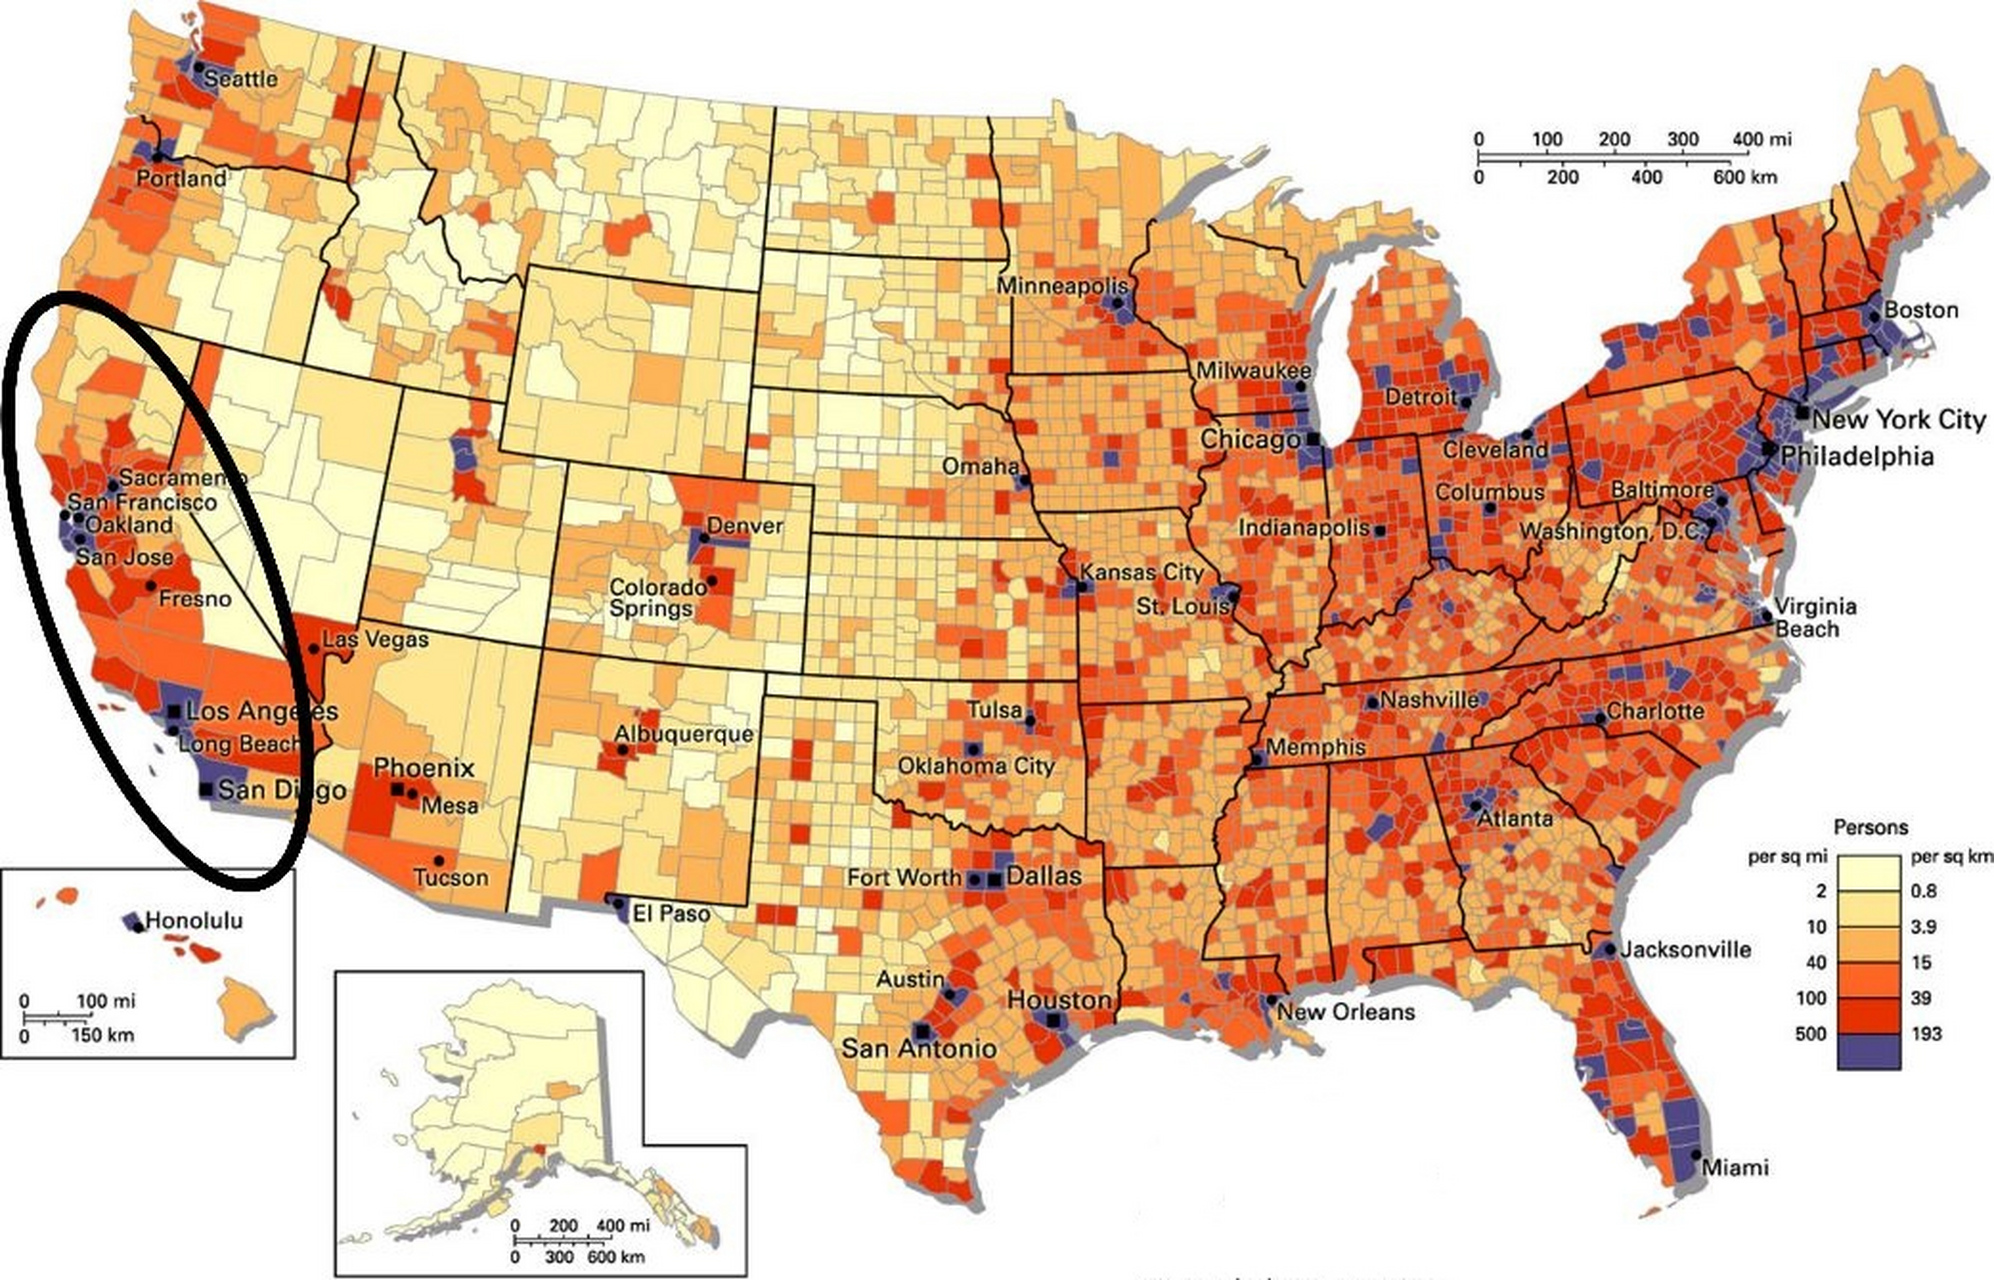 美国人口分布 密度图片